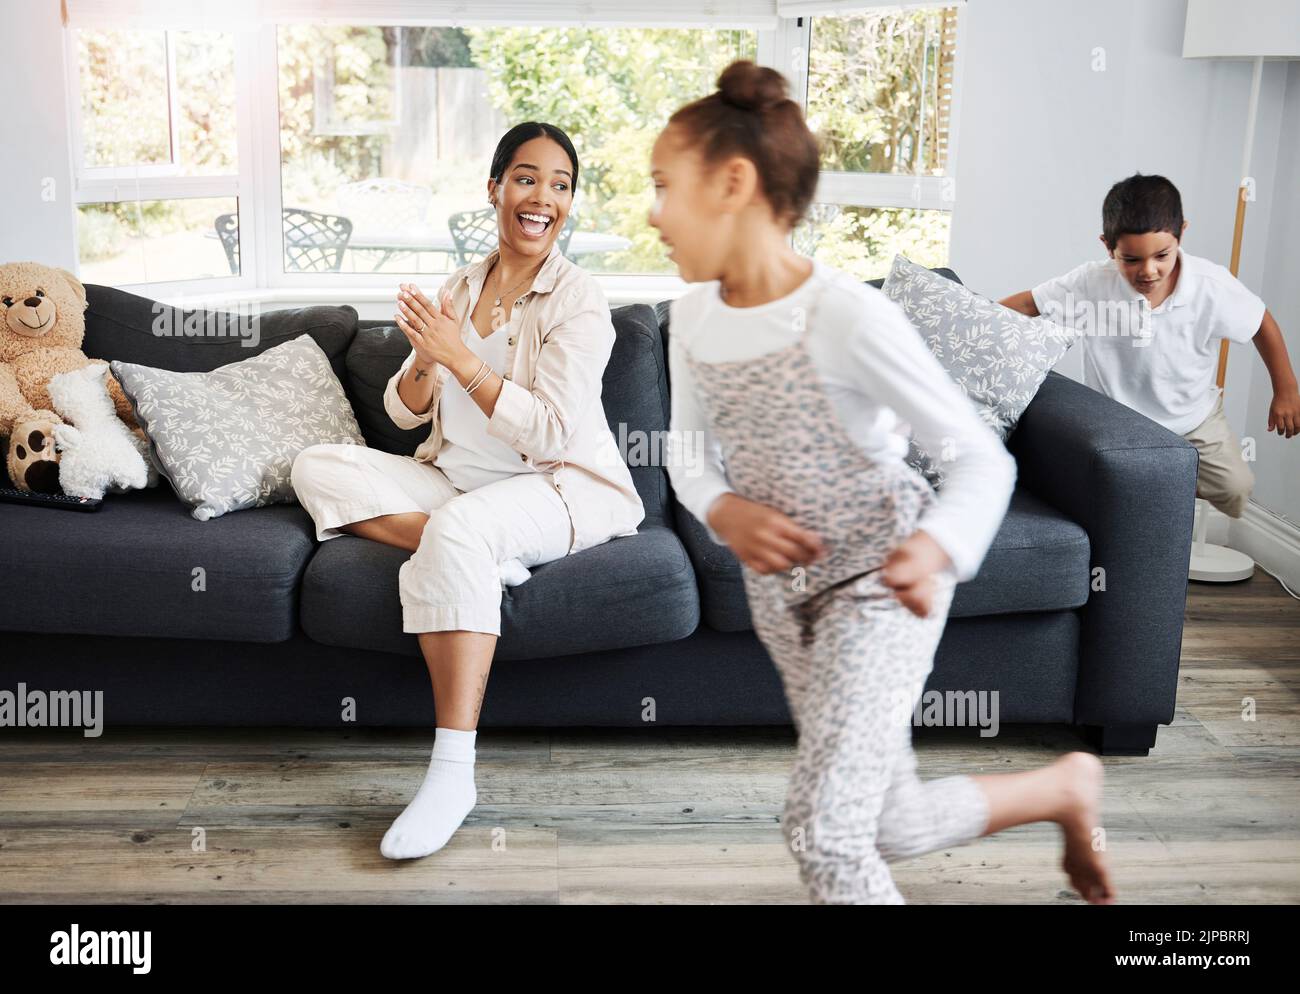 Spielen, Laufen und kleine Kinder aufgeregt drinnen mit einer lächelnden Mutter beobachten auf einer Couch. Glückliche Familie, die den Tag zusammen drinnen verbringt Stockfoto